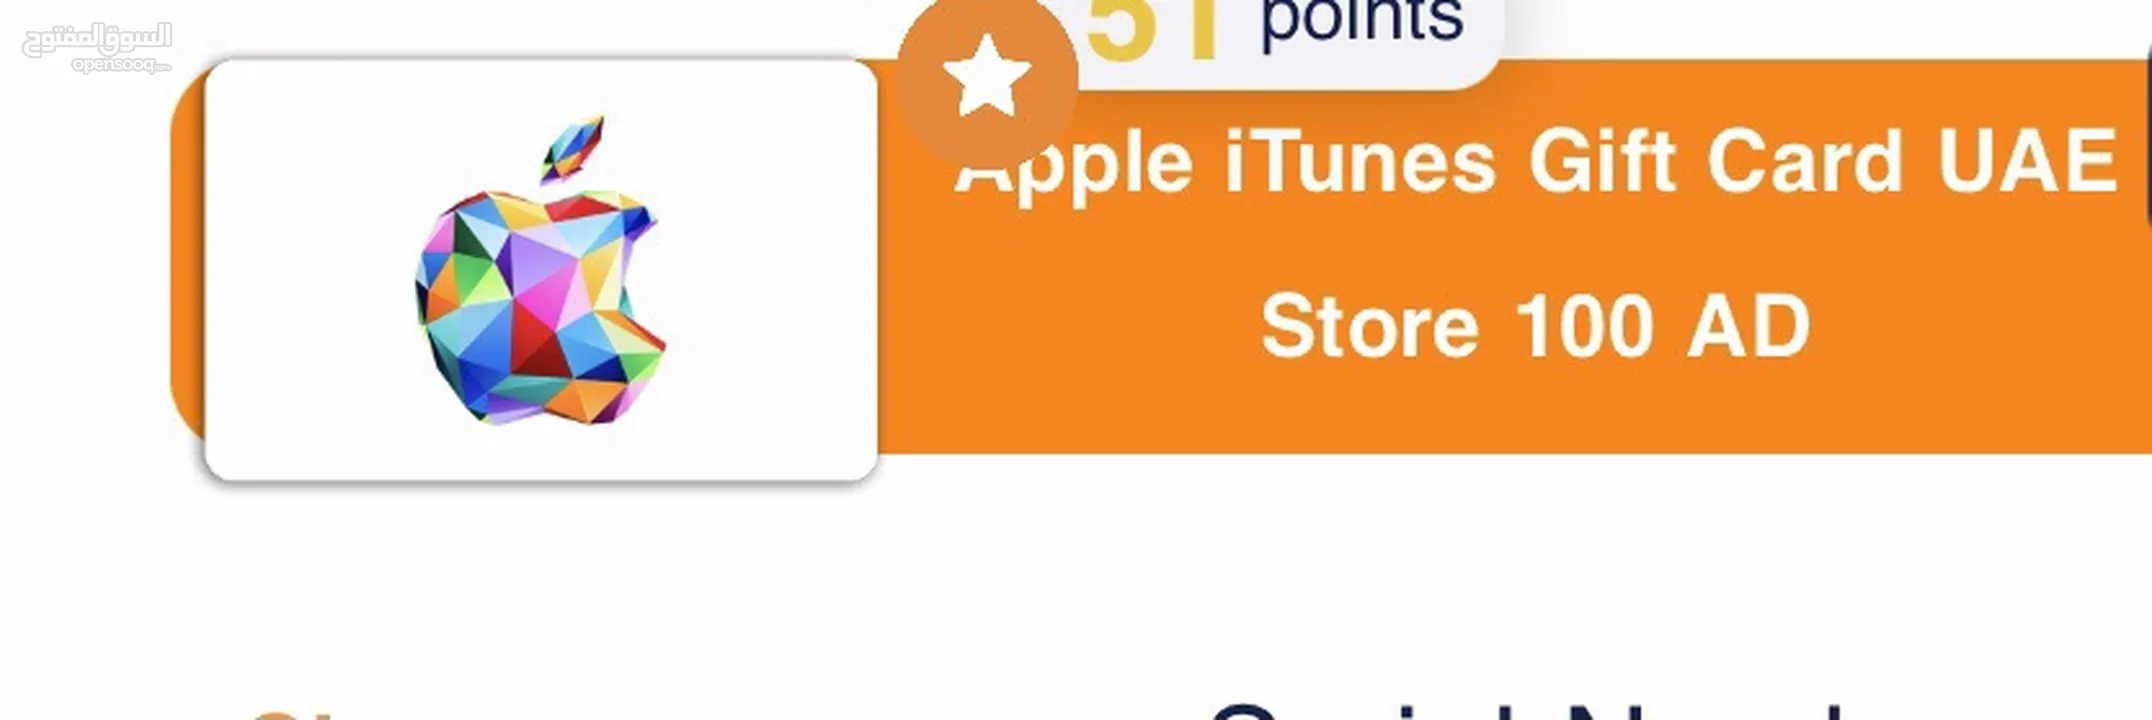 ايتتونز ابل اماراتي  Apple iTunes